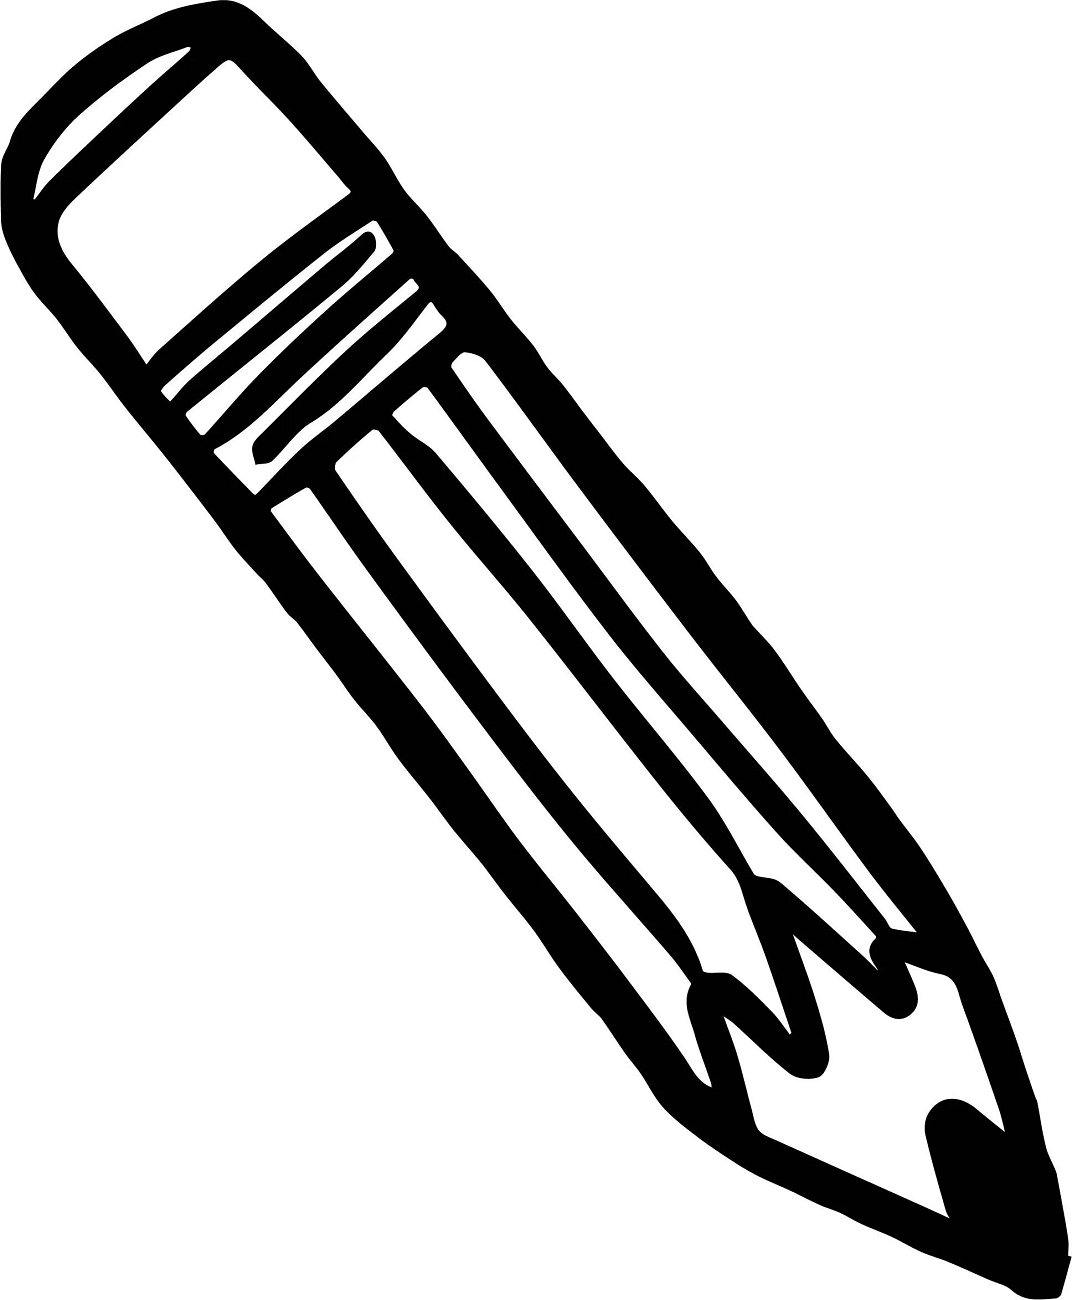 A Short Pencil